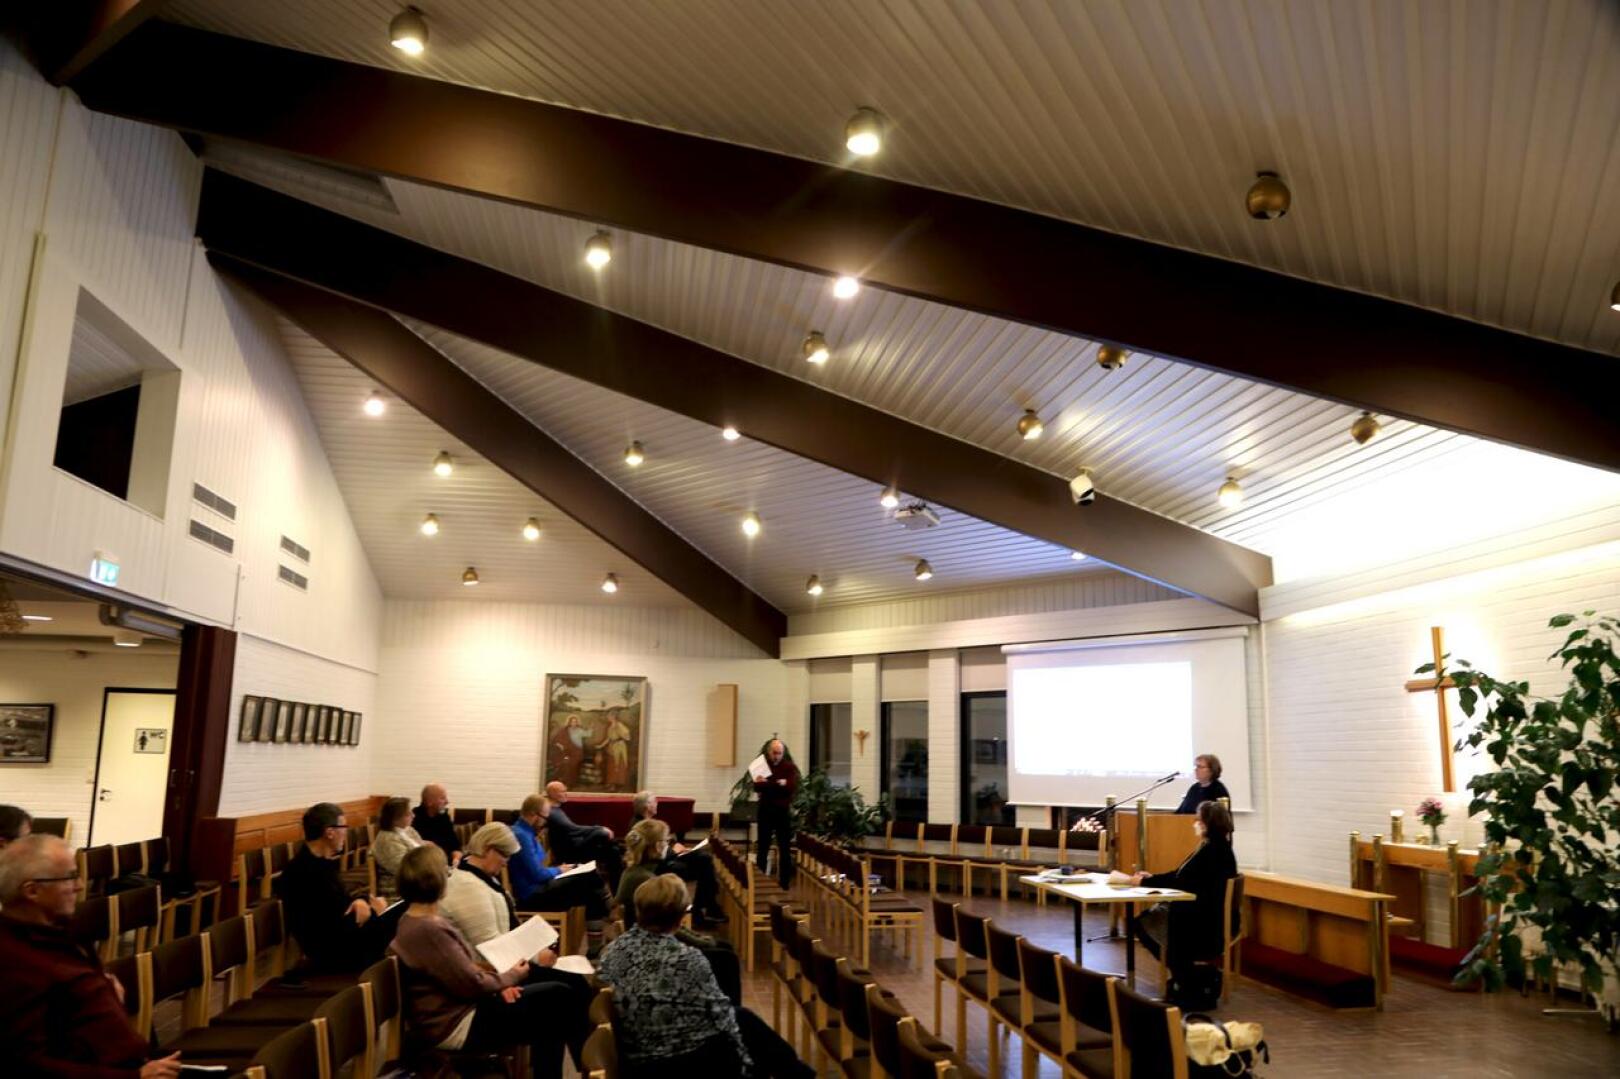 Kirkkovaltuusto kokoontui vaalikauden viimeisessä kokouksessaan Vetelin seurakuntatalolla hyväksymään seurakuntatalolle tarkentuneen korjaus- ja muutossuunnitelman sekä talousarvion ensi vuodelle. 